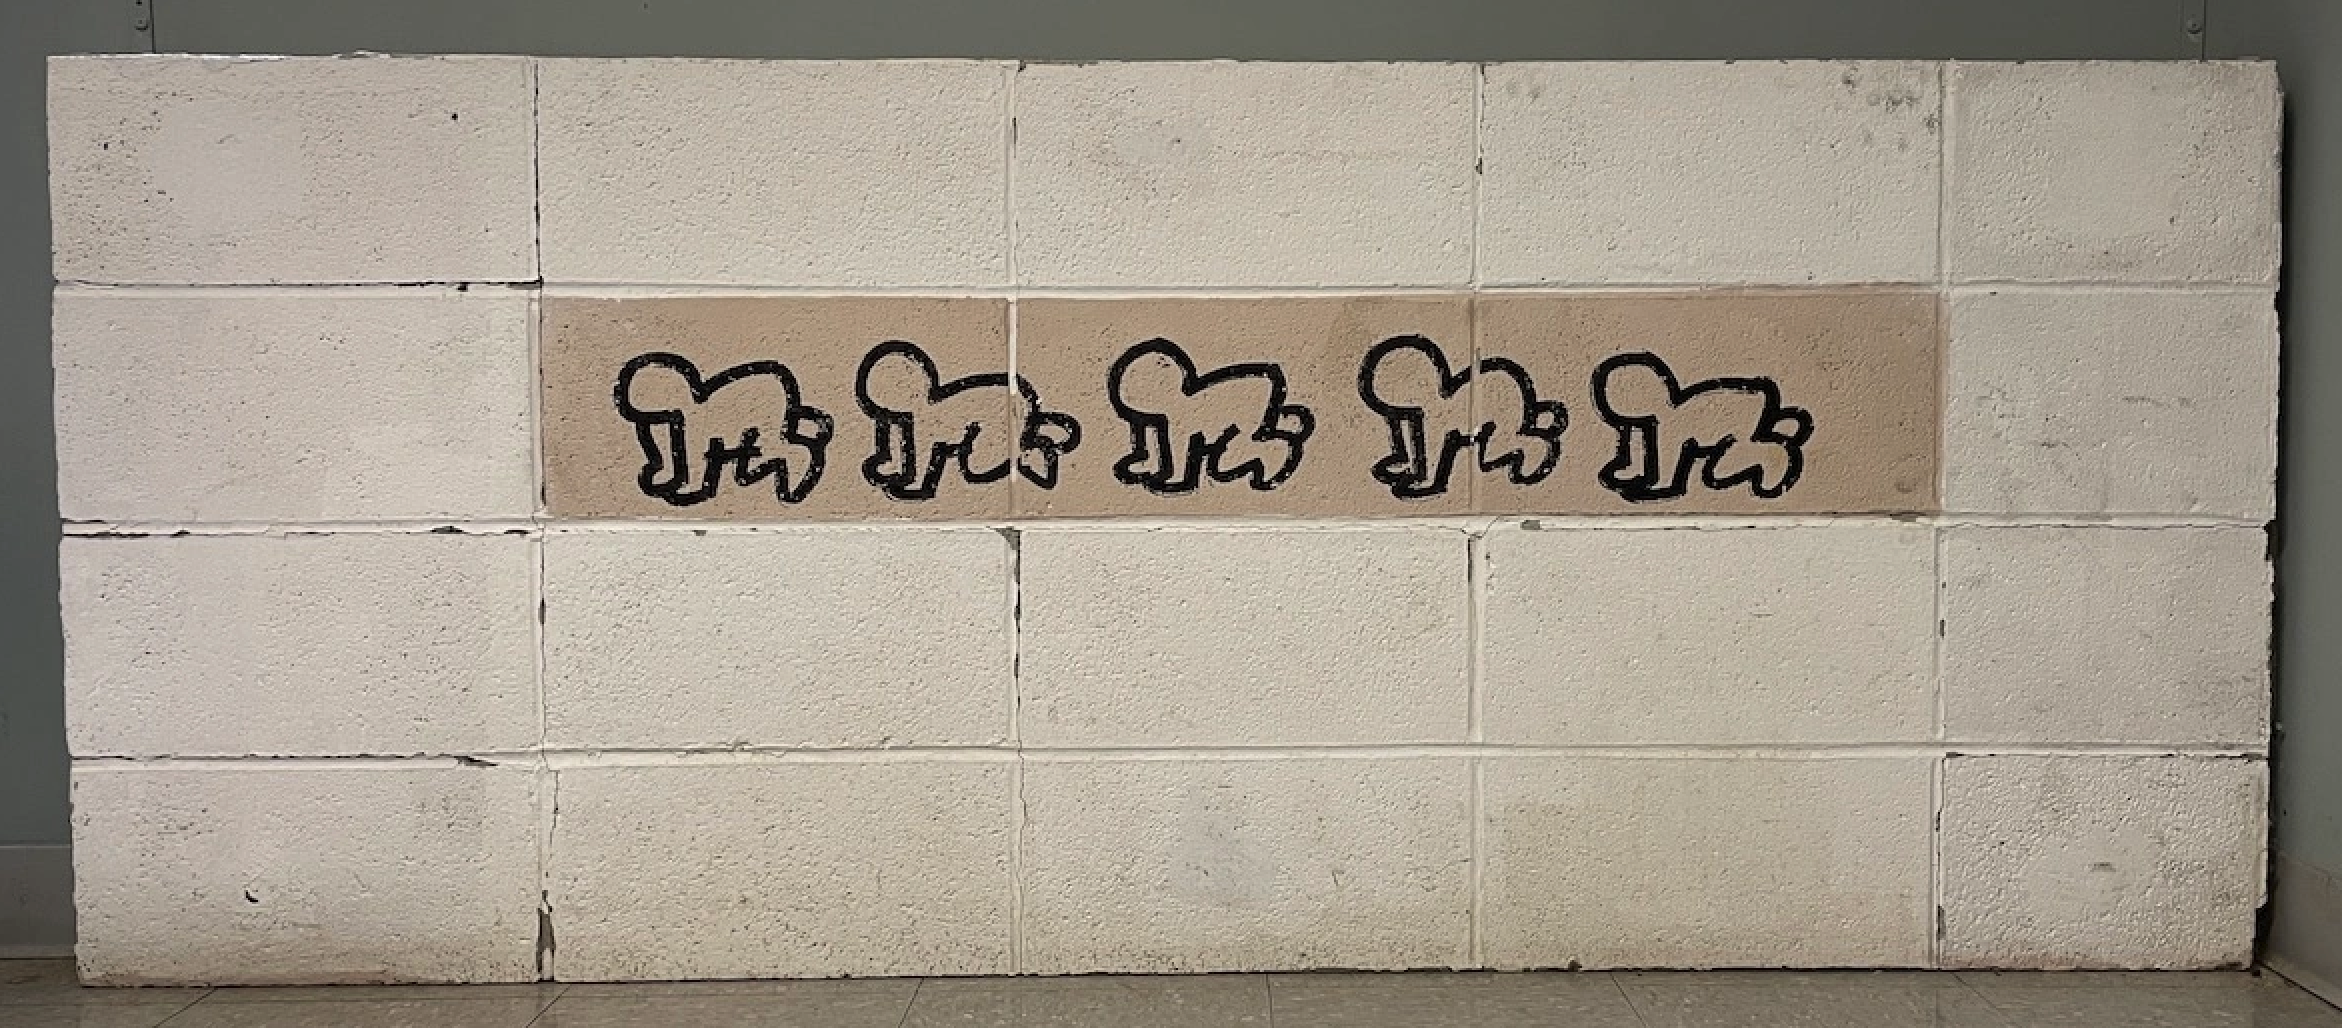 Il Bard College reinstallerà un murale di Keith Haring realizzato più di 40 anni fa